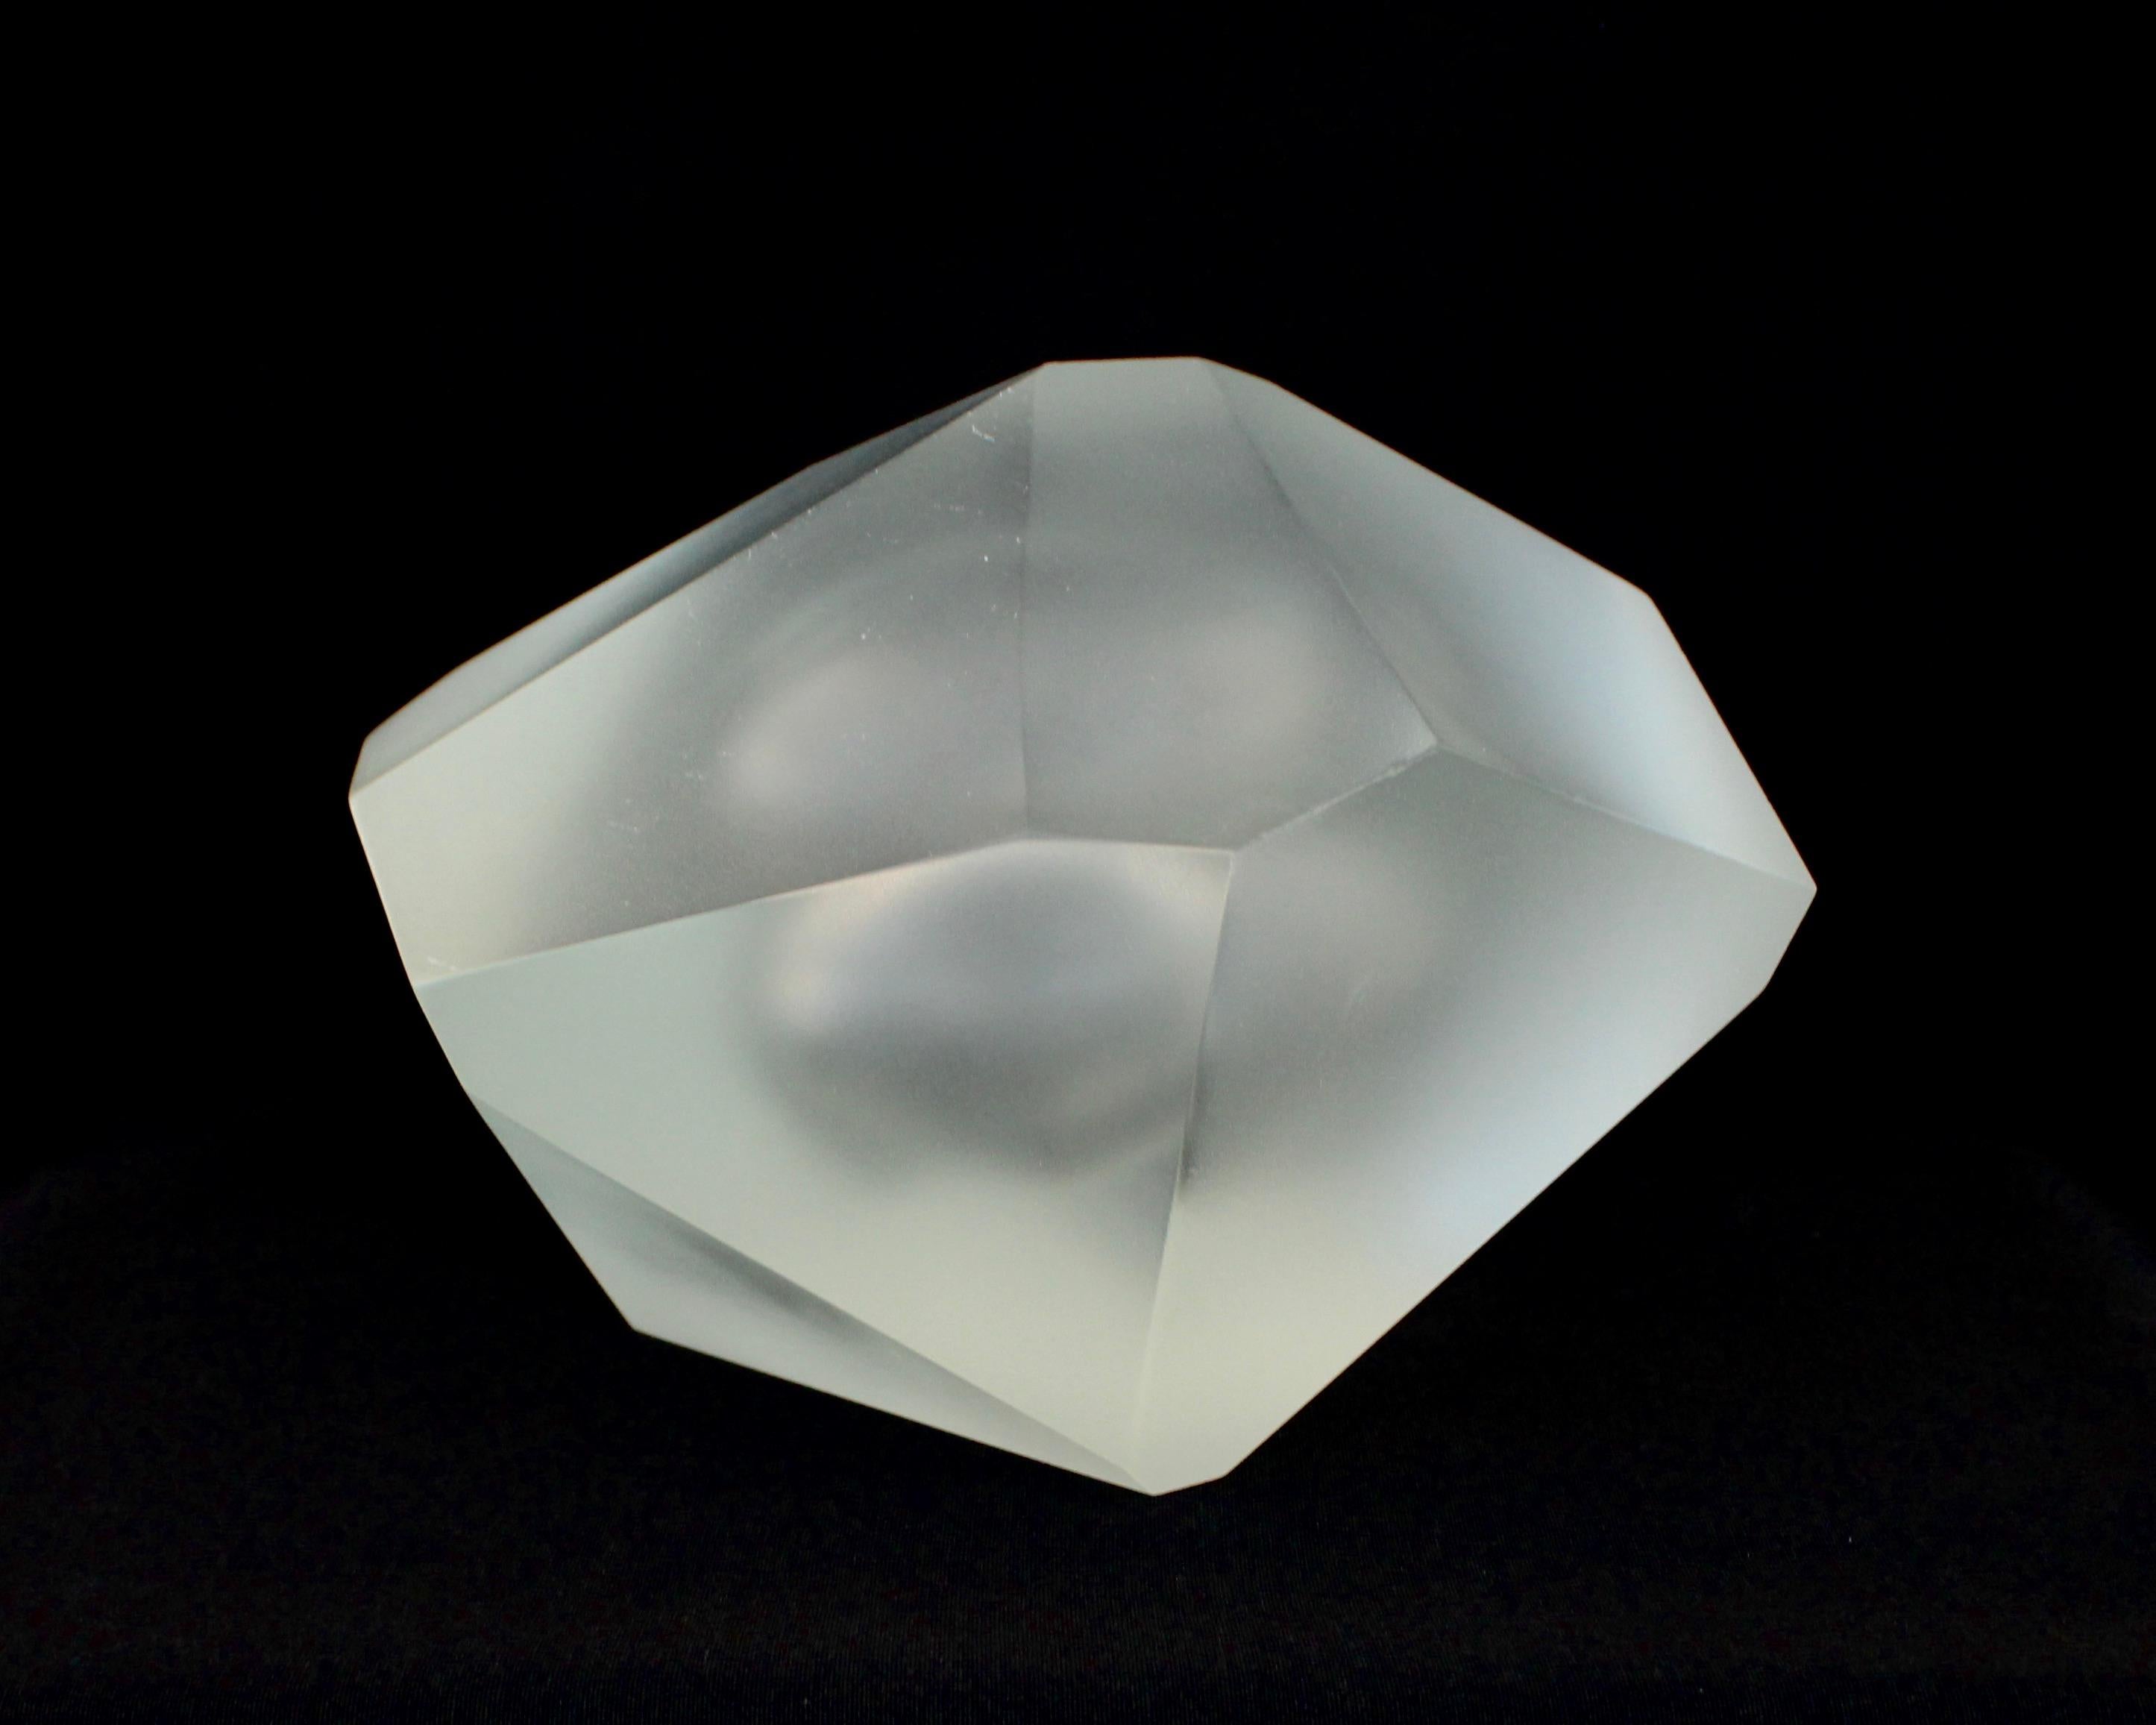 Mundgeblasenes skulpturales Objekt des italienischen Künstlers Massimo Micheluzzi, das mit der Battuto-Technik (Schneiden und Schleifen) eine matte Oberfläche erhält. Geboren 1957 in Venedig. Er studierte Kunstgeschichte an der Universität